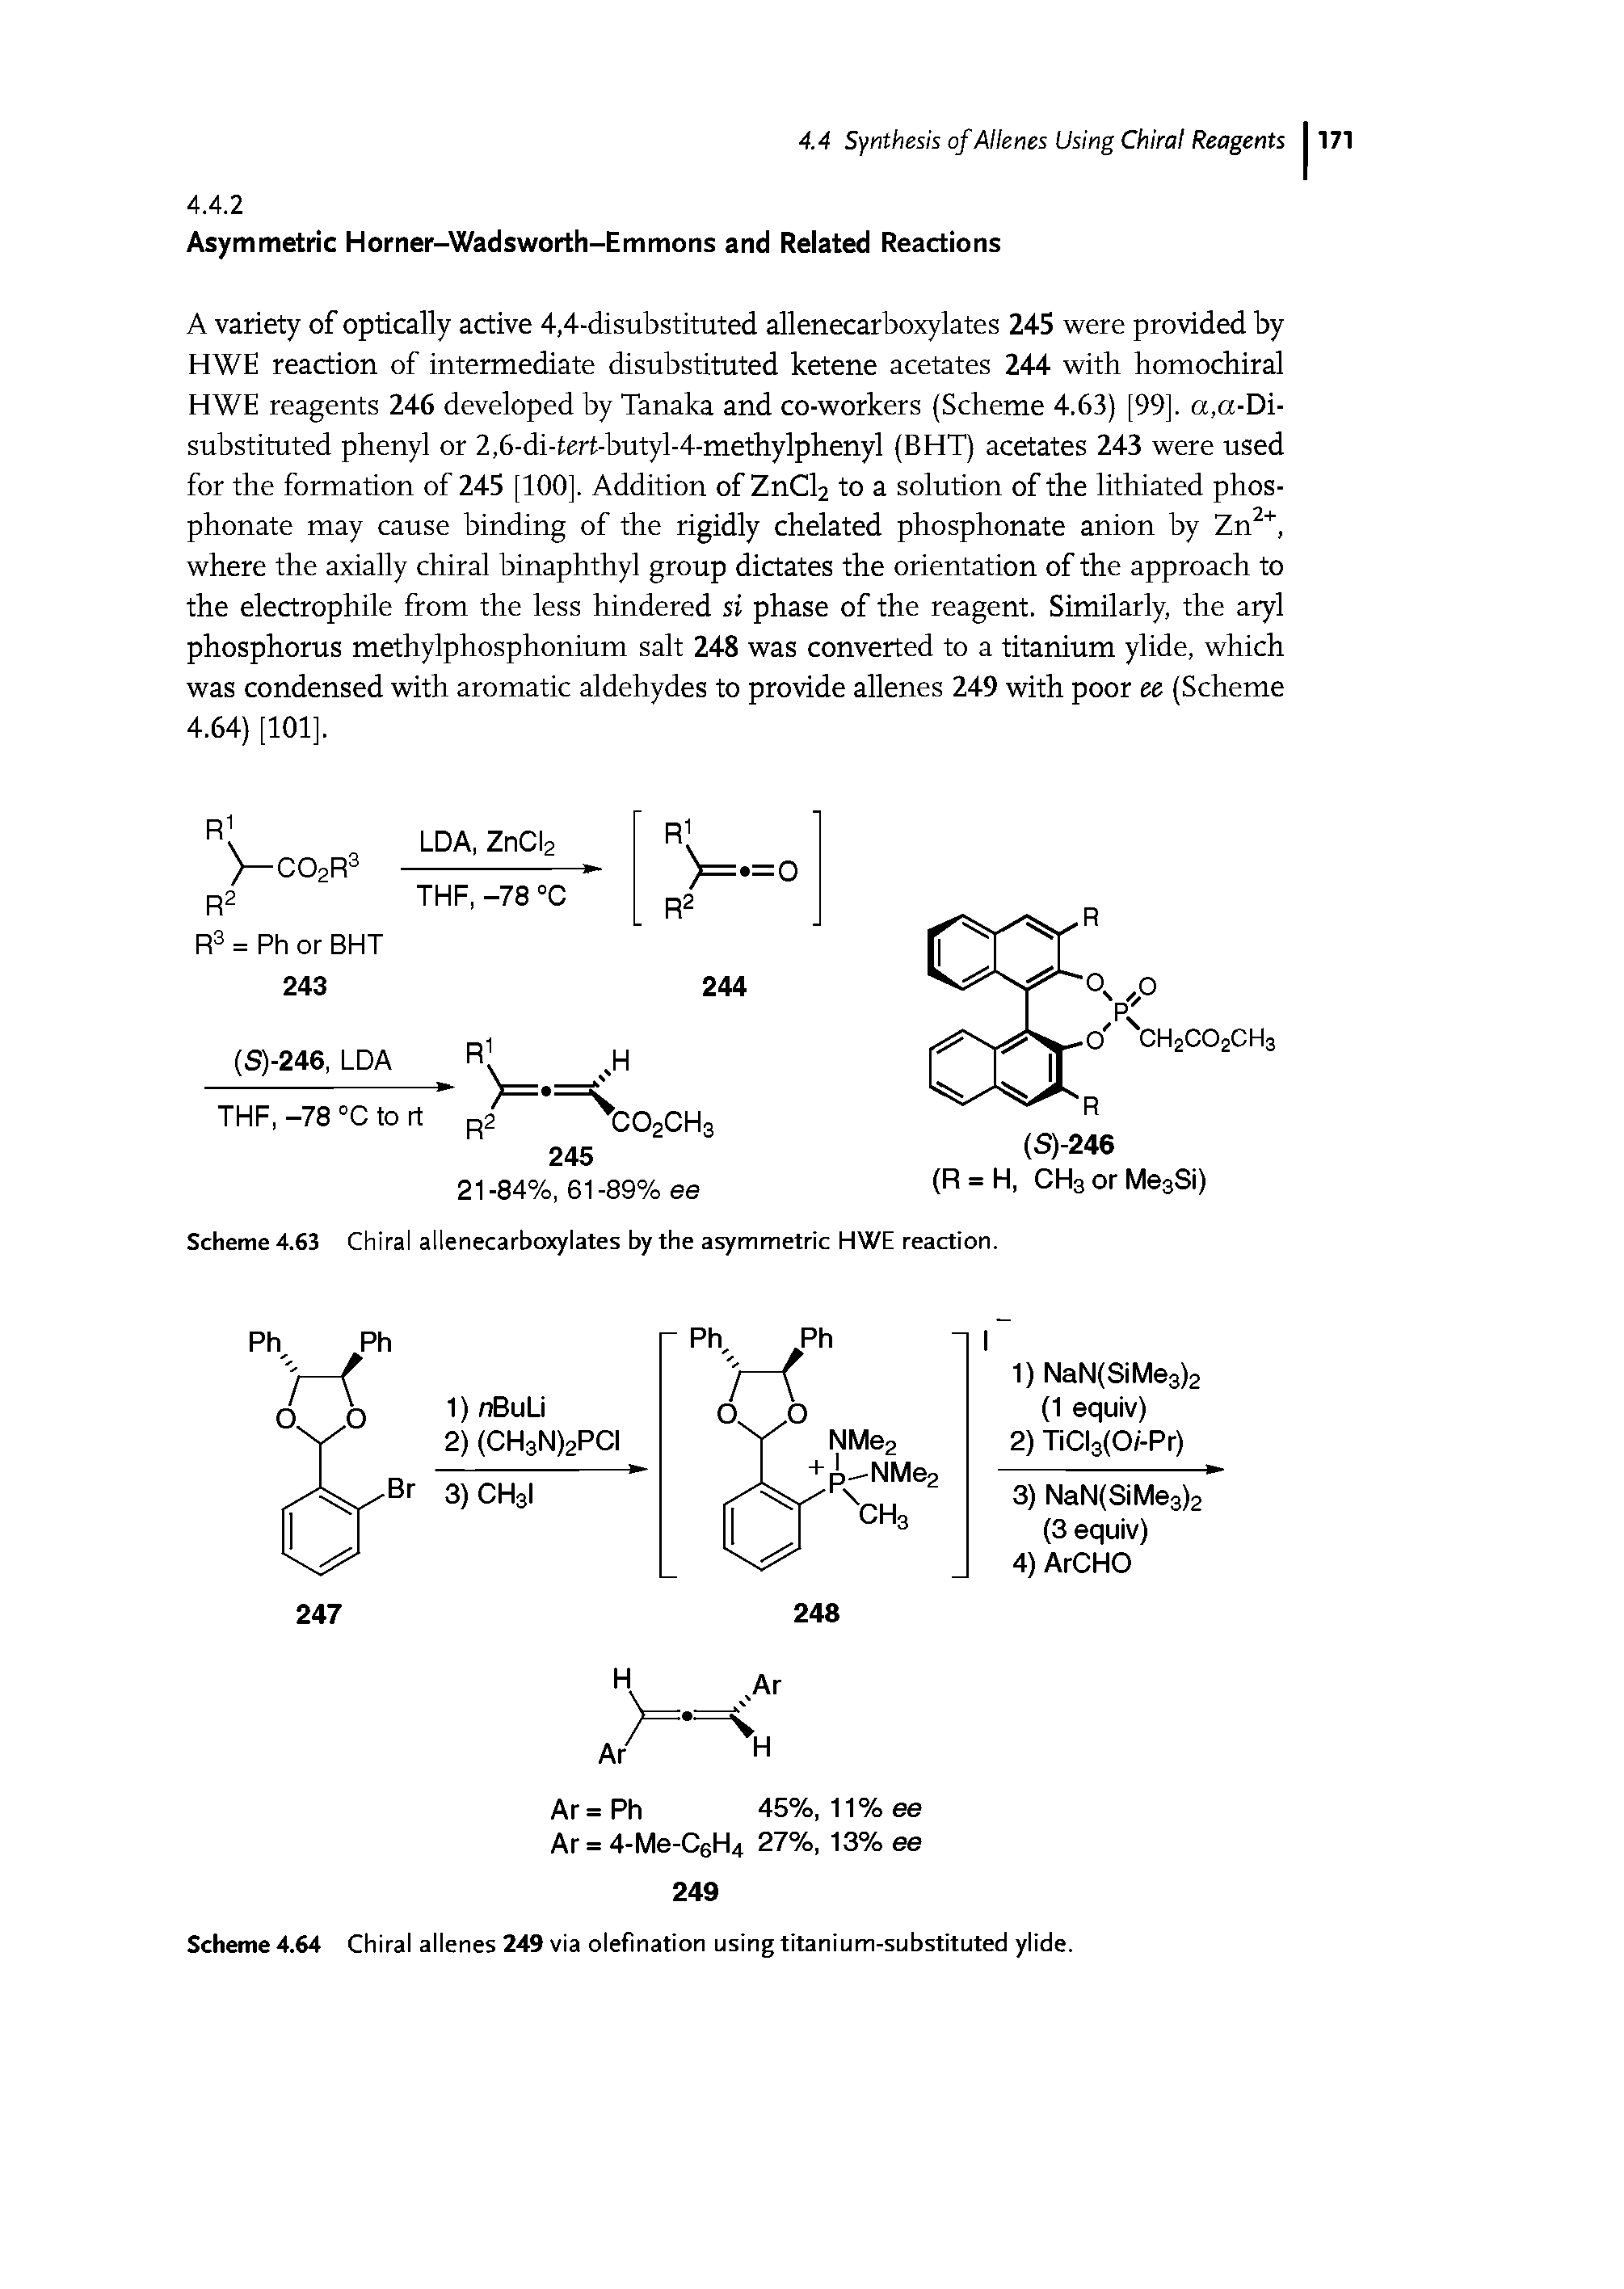 Scheme 4.64 Chiral allenes 249 via olefination using titanium-substituted ylide.